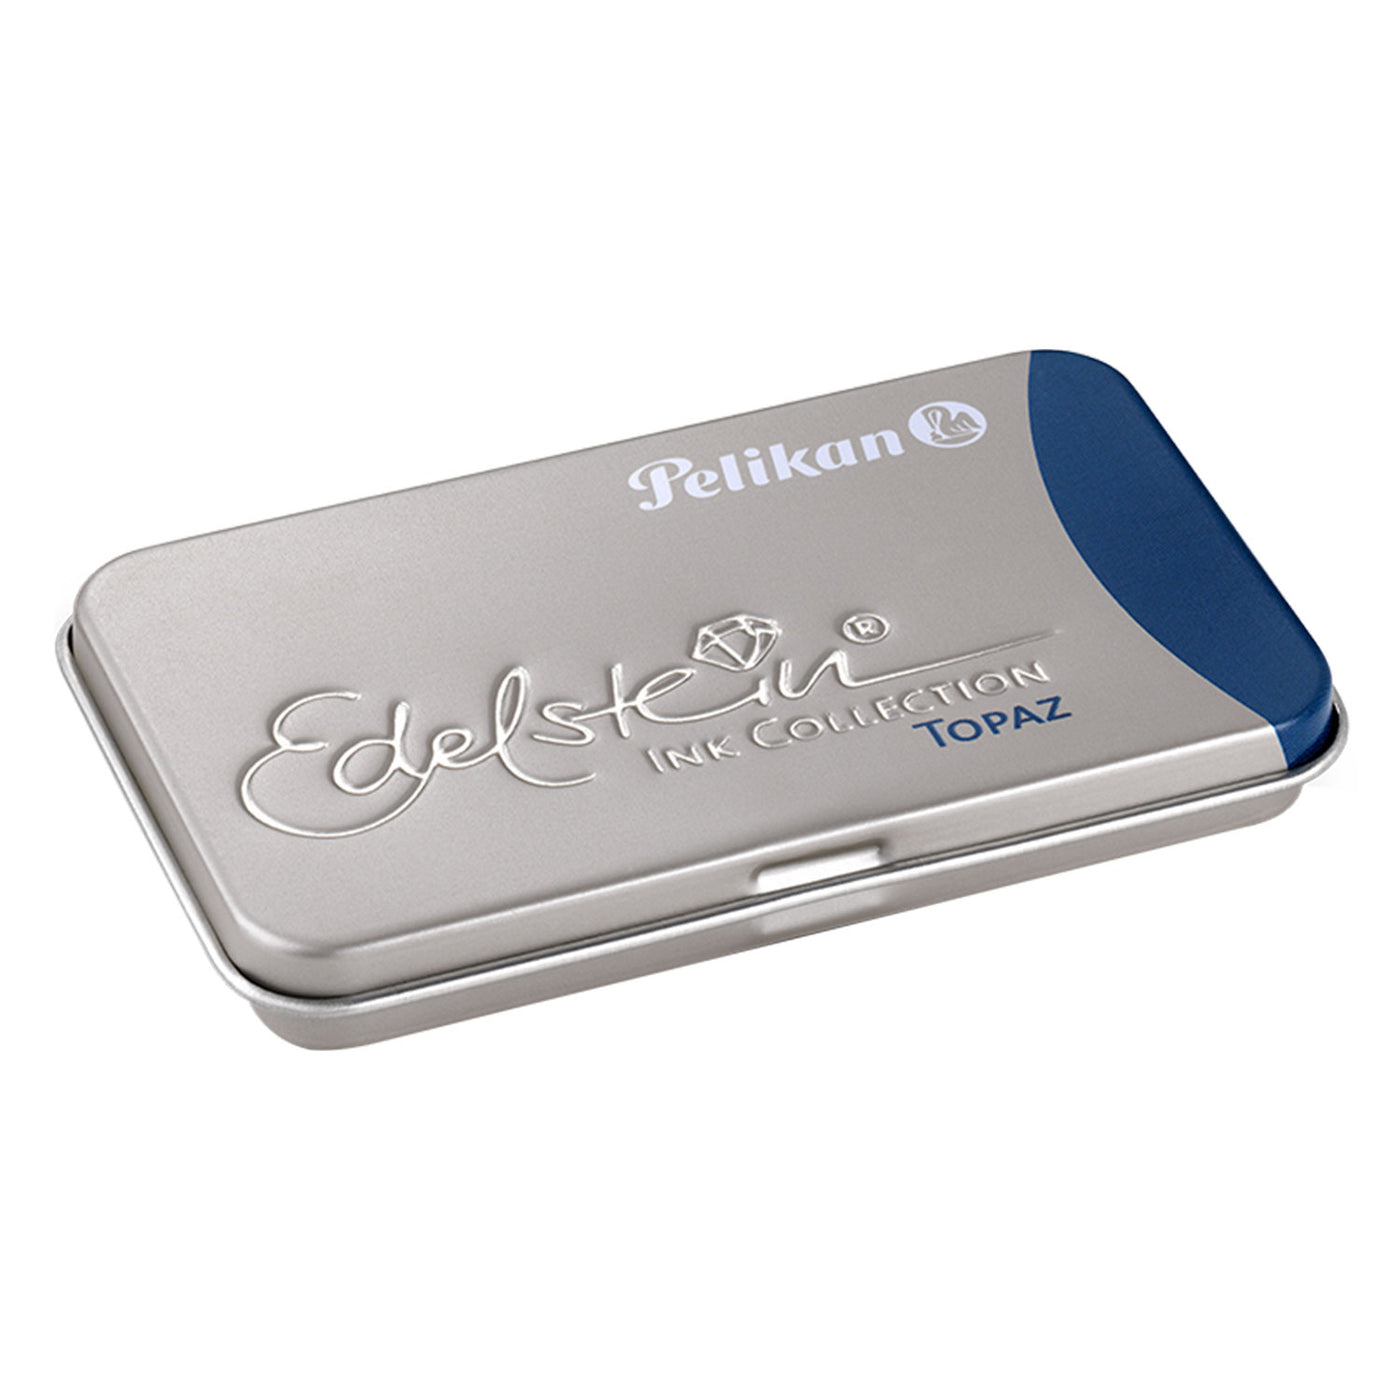 Pelikan Edelstein Ink Cartridge Pack of 6 Topaz